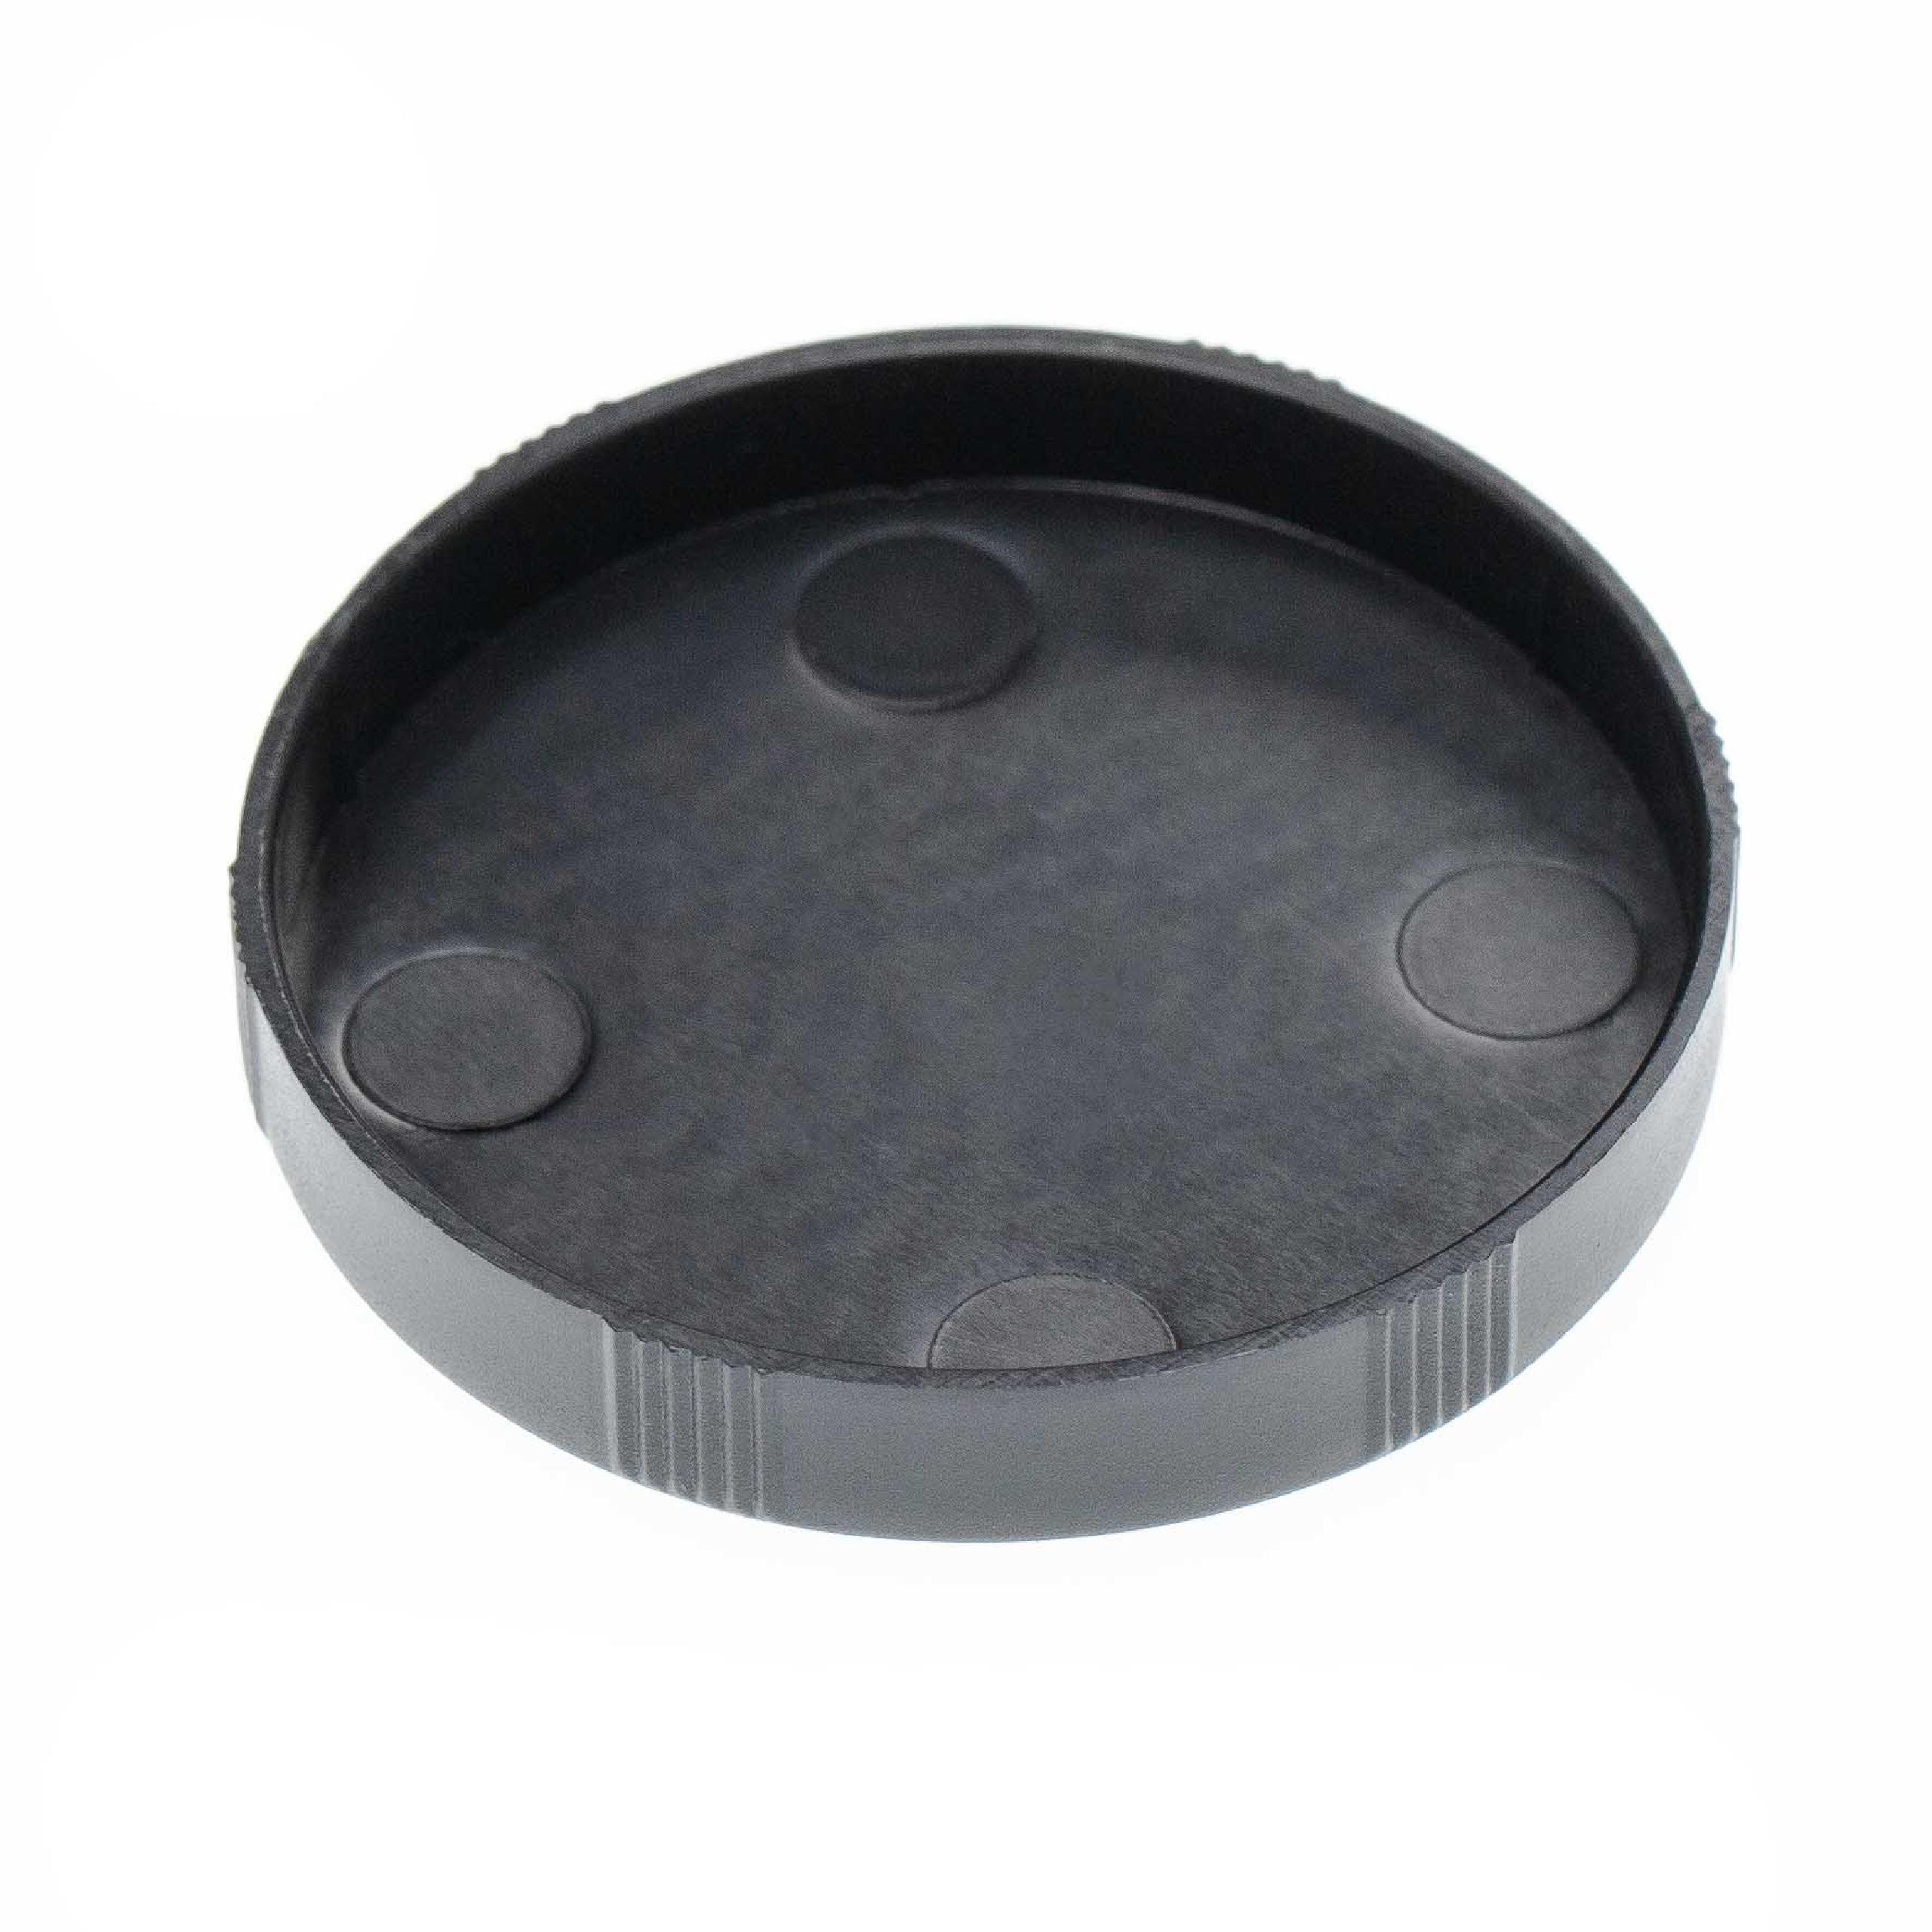 2x Objektivdeckel passend für Fernglas-Objektive mit 45 mm Durchmesser - Schwarz, Aufsteckbar